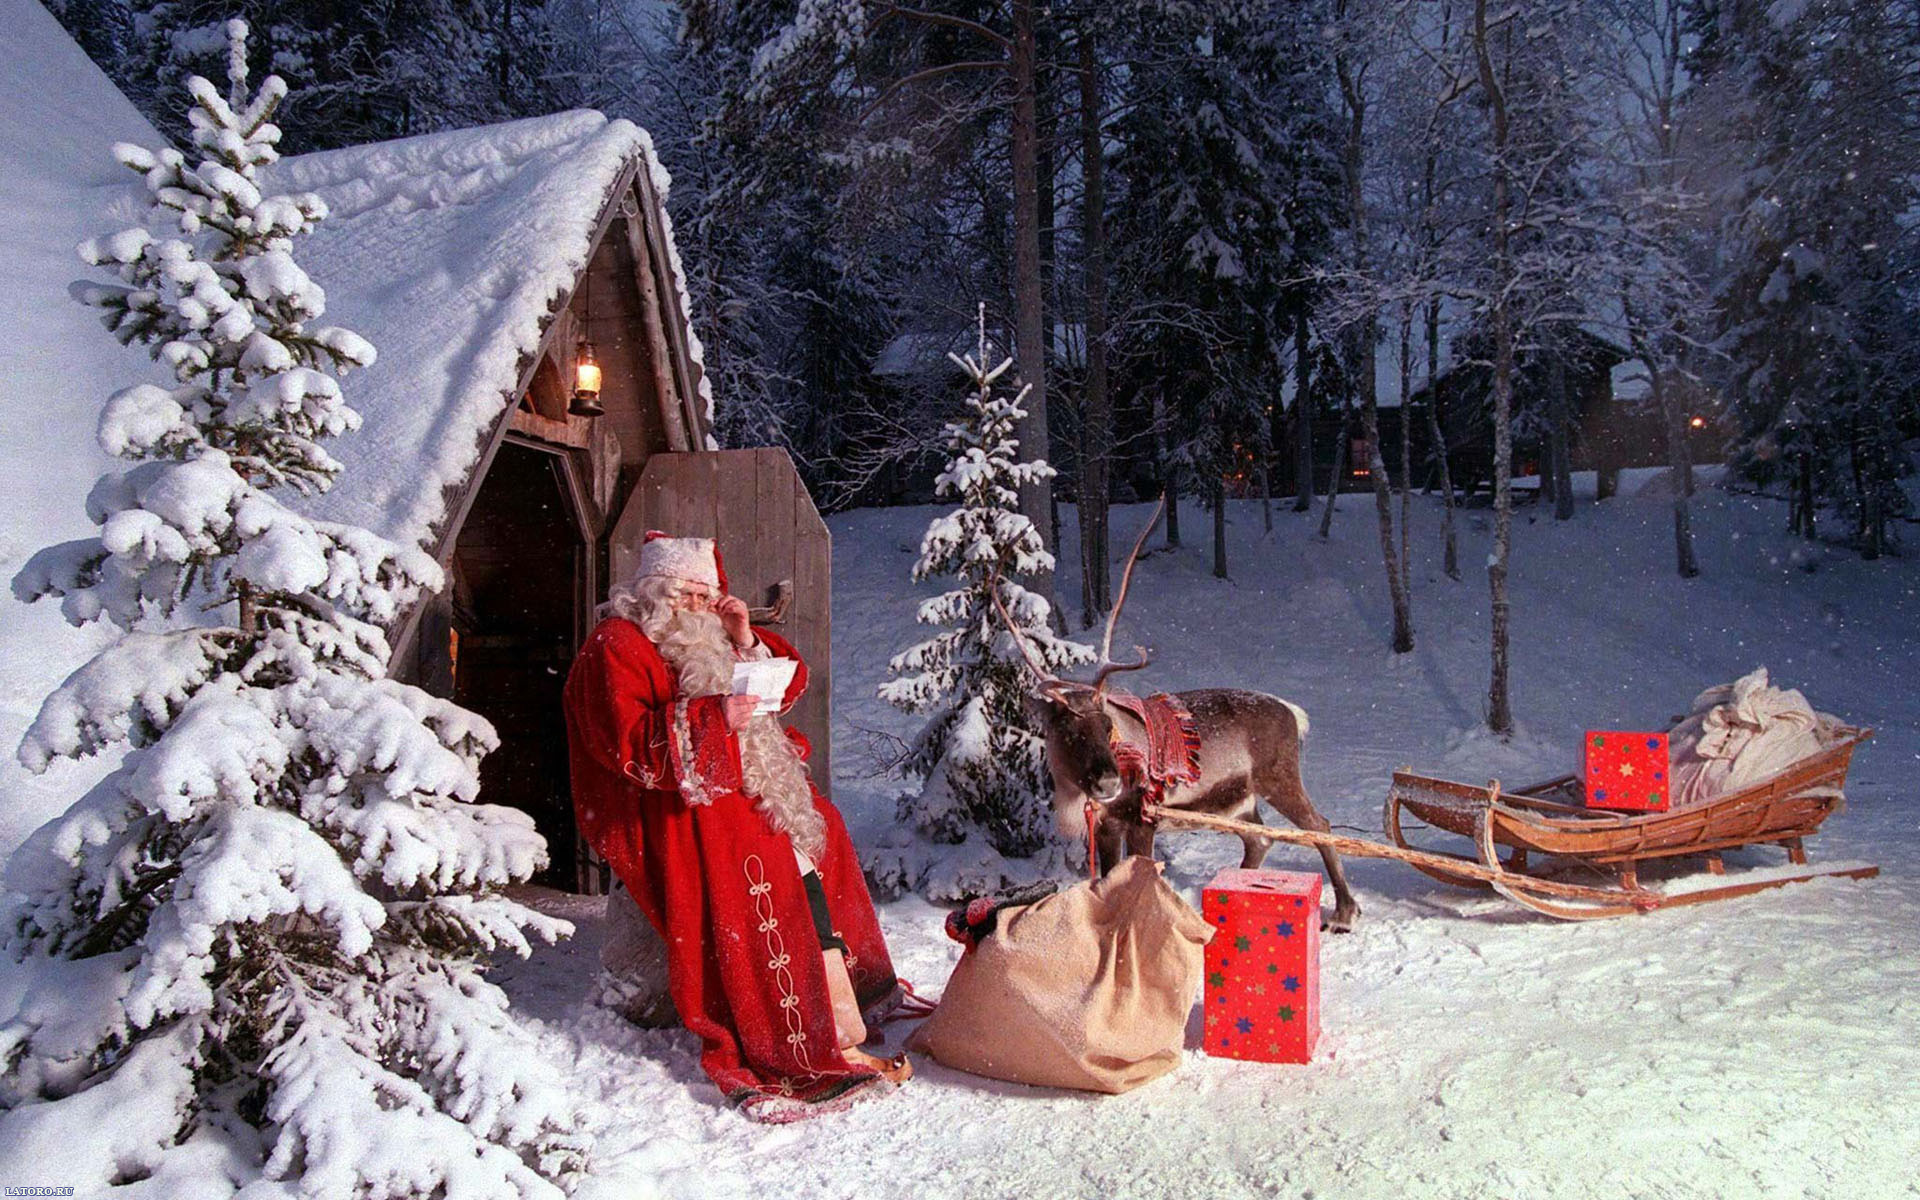 Скачать обои бесплатно Рождество (Christmas Xmas), Новый Год (New Year), Санта Клаус (Santa Claus), Праздники, Люди картинка на рабочий стол ПК